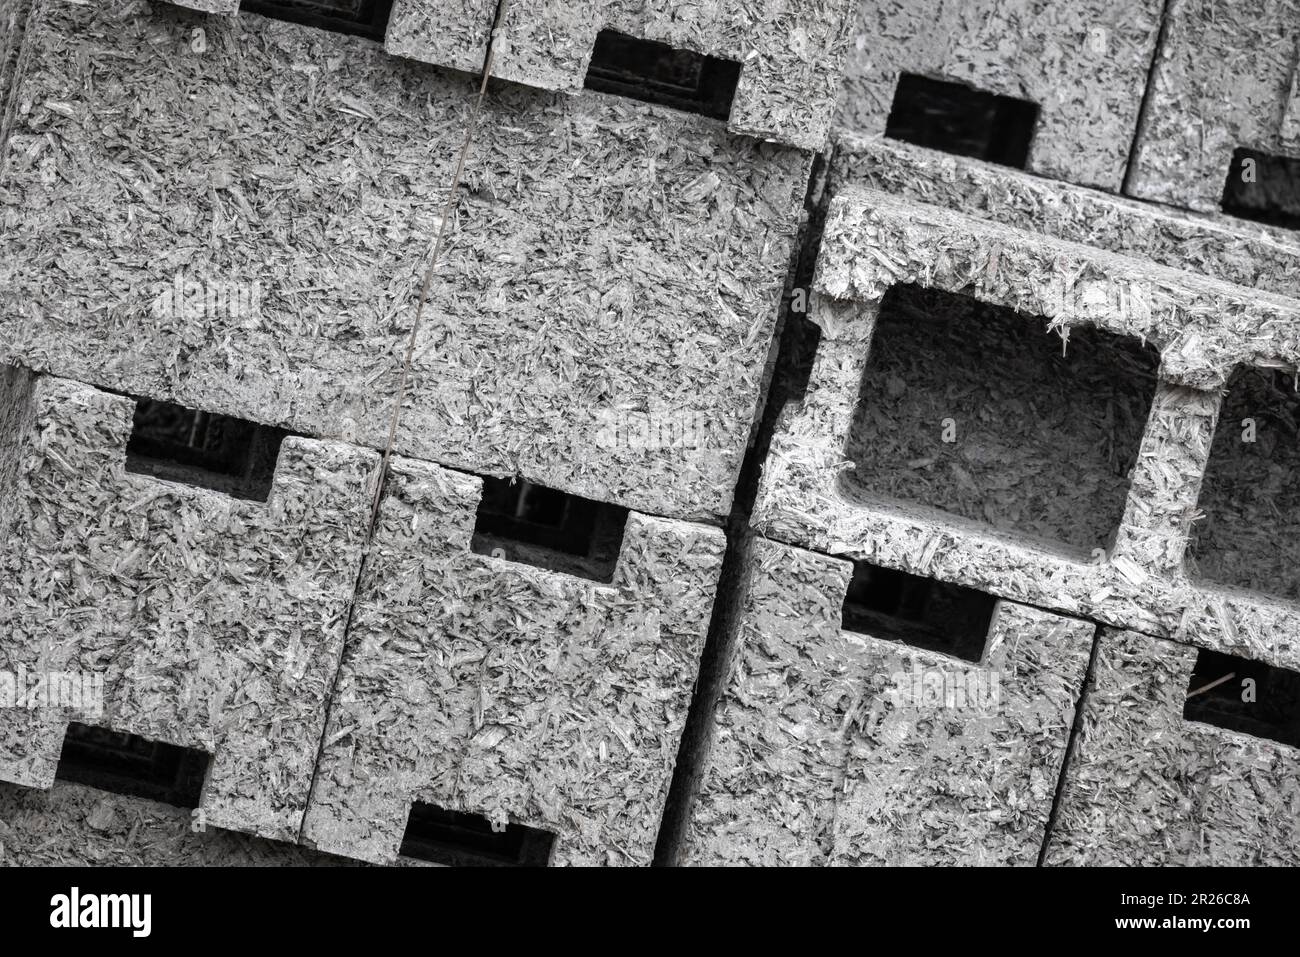 Arbolite blocs photo gros plan, ce matériau de construction est en béton léger à base de liant de ciment, d'agrégats organiques et d'additifs chimiques. Banque D'Images